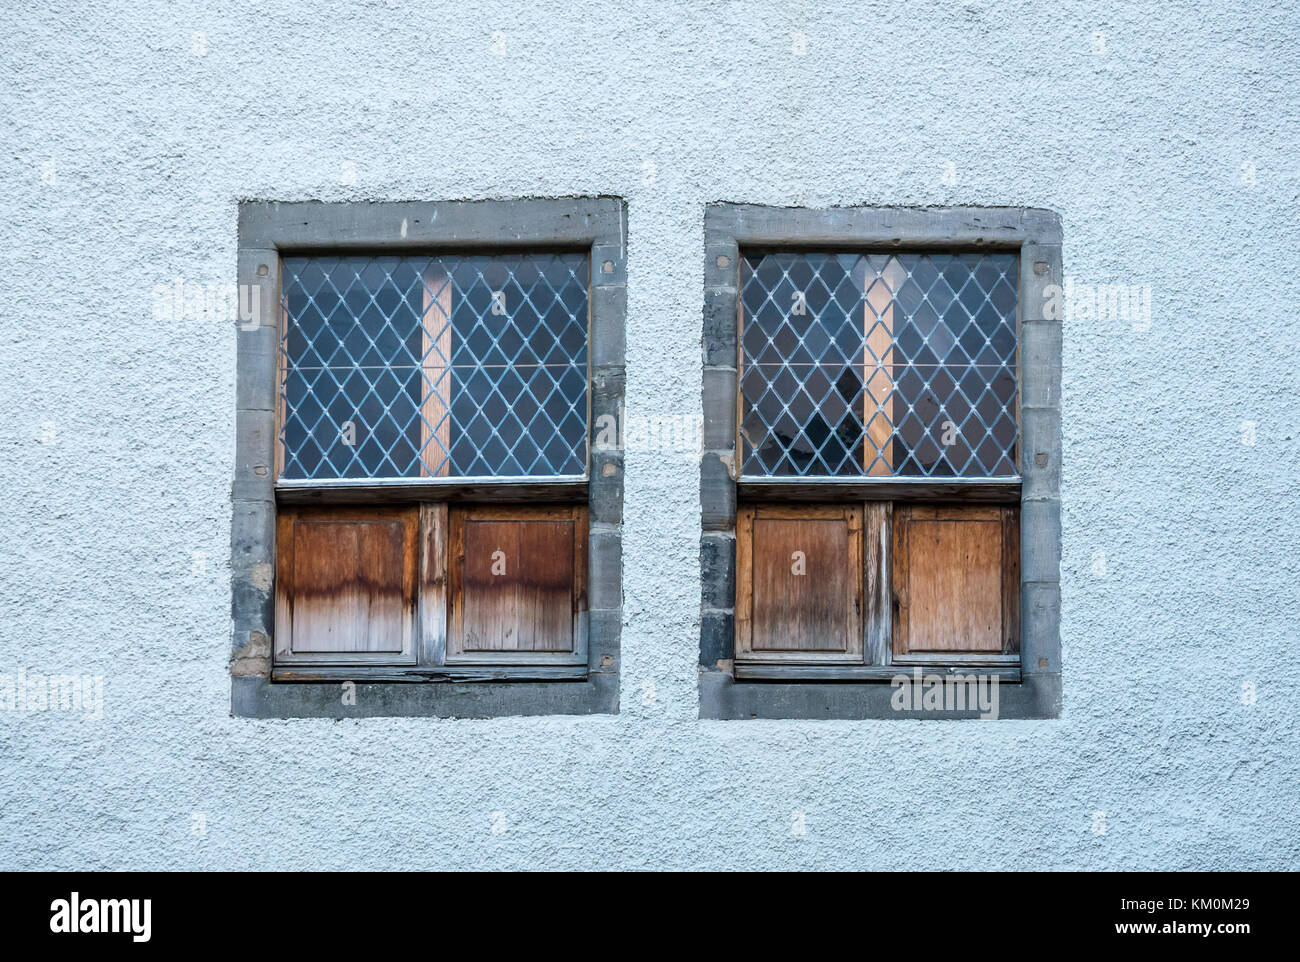 Alte Gitter Fenster mit Fensterläden, 17. Jahrhundert hanseatisches Handelshaus, Lämmer Haus, Leith, Edinburgh, Schottland, Großbritannien, Kategorie ein denkmalgeschütztes Gebäude Stockfoto